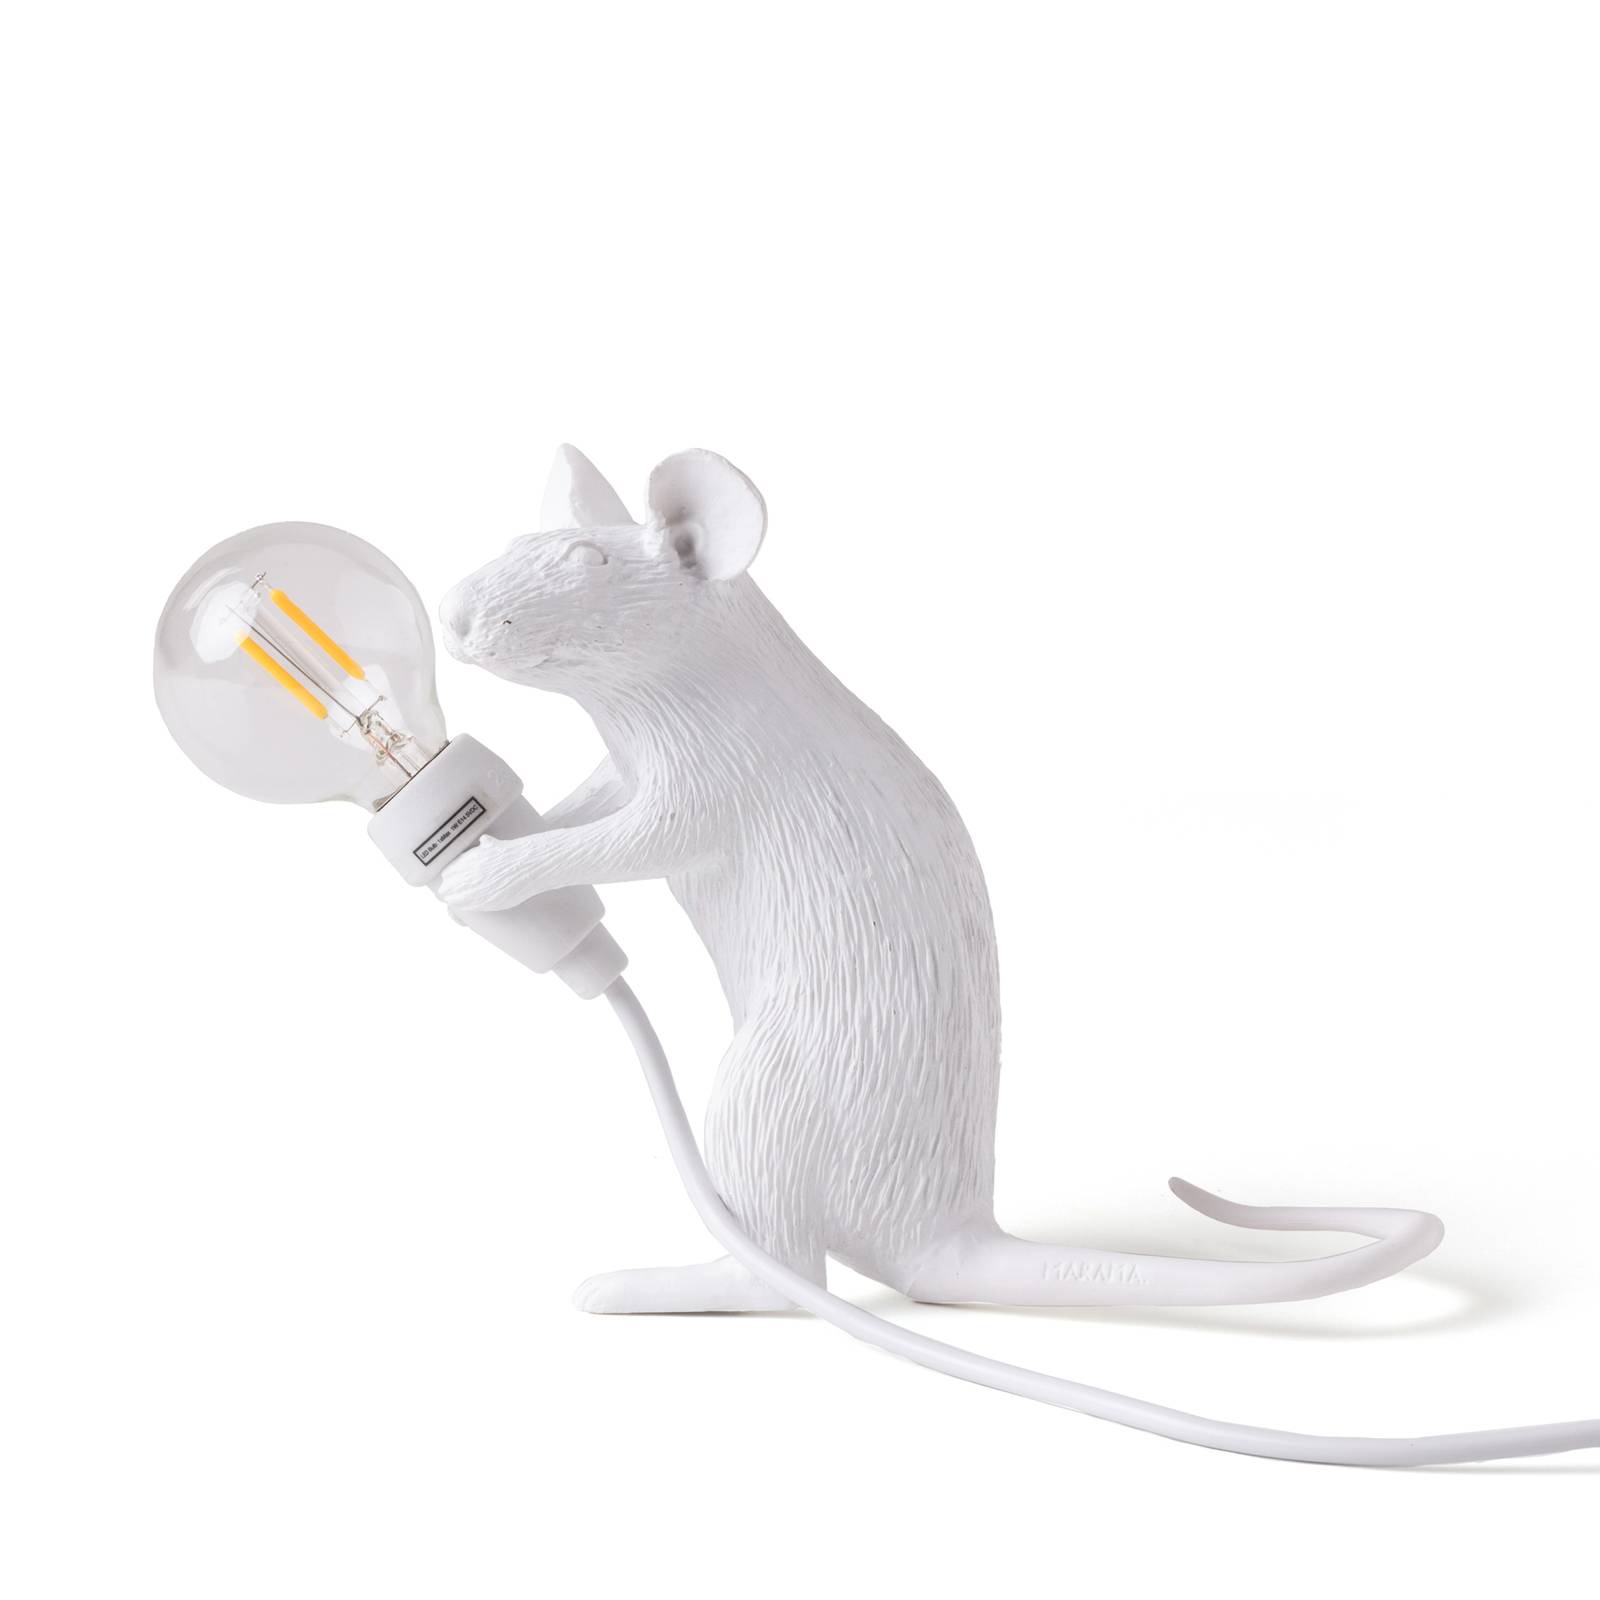 Seletti led asztali világítás mouse lamp usb ülő fehér